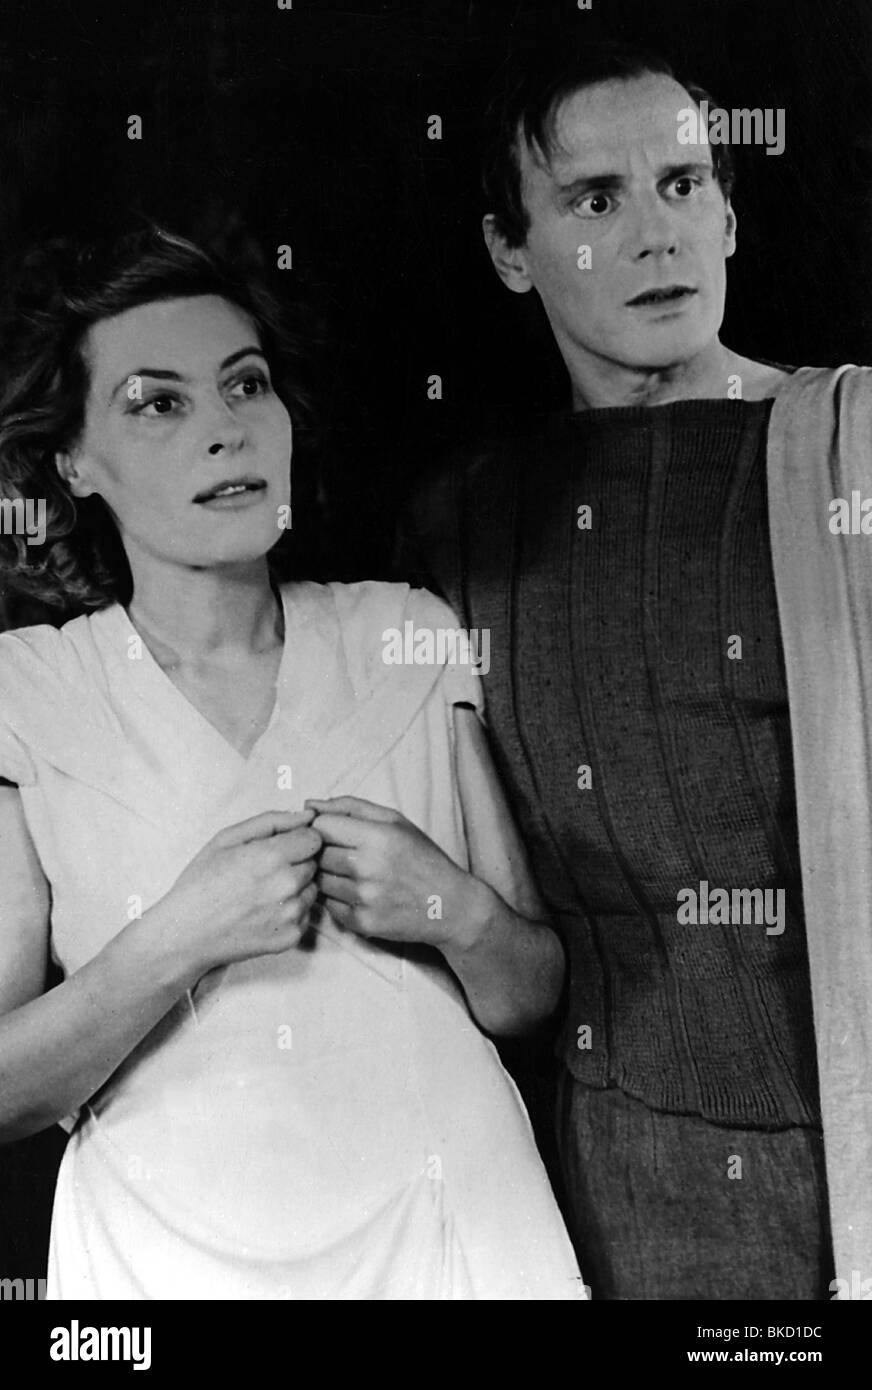 Gruendgens, Gustaf, 22.12.1899 - 7.10.1963, deutscher Schauspieler und Regisseur, als Orestes in dem Stück "Die Fliegen" von ean-Paul Sartre, mit Marianné Hoppe als Electra, 1947, Stockfoto